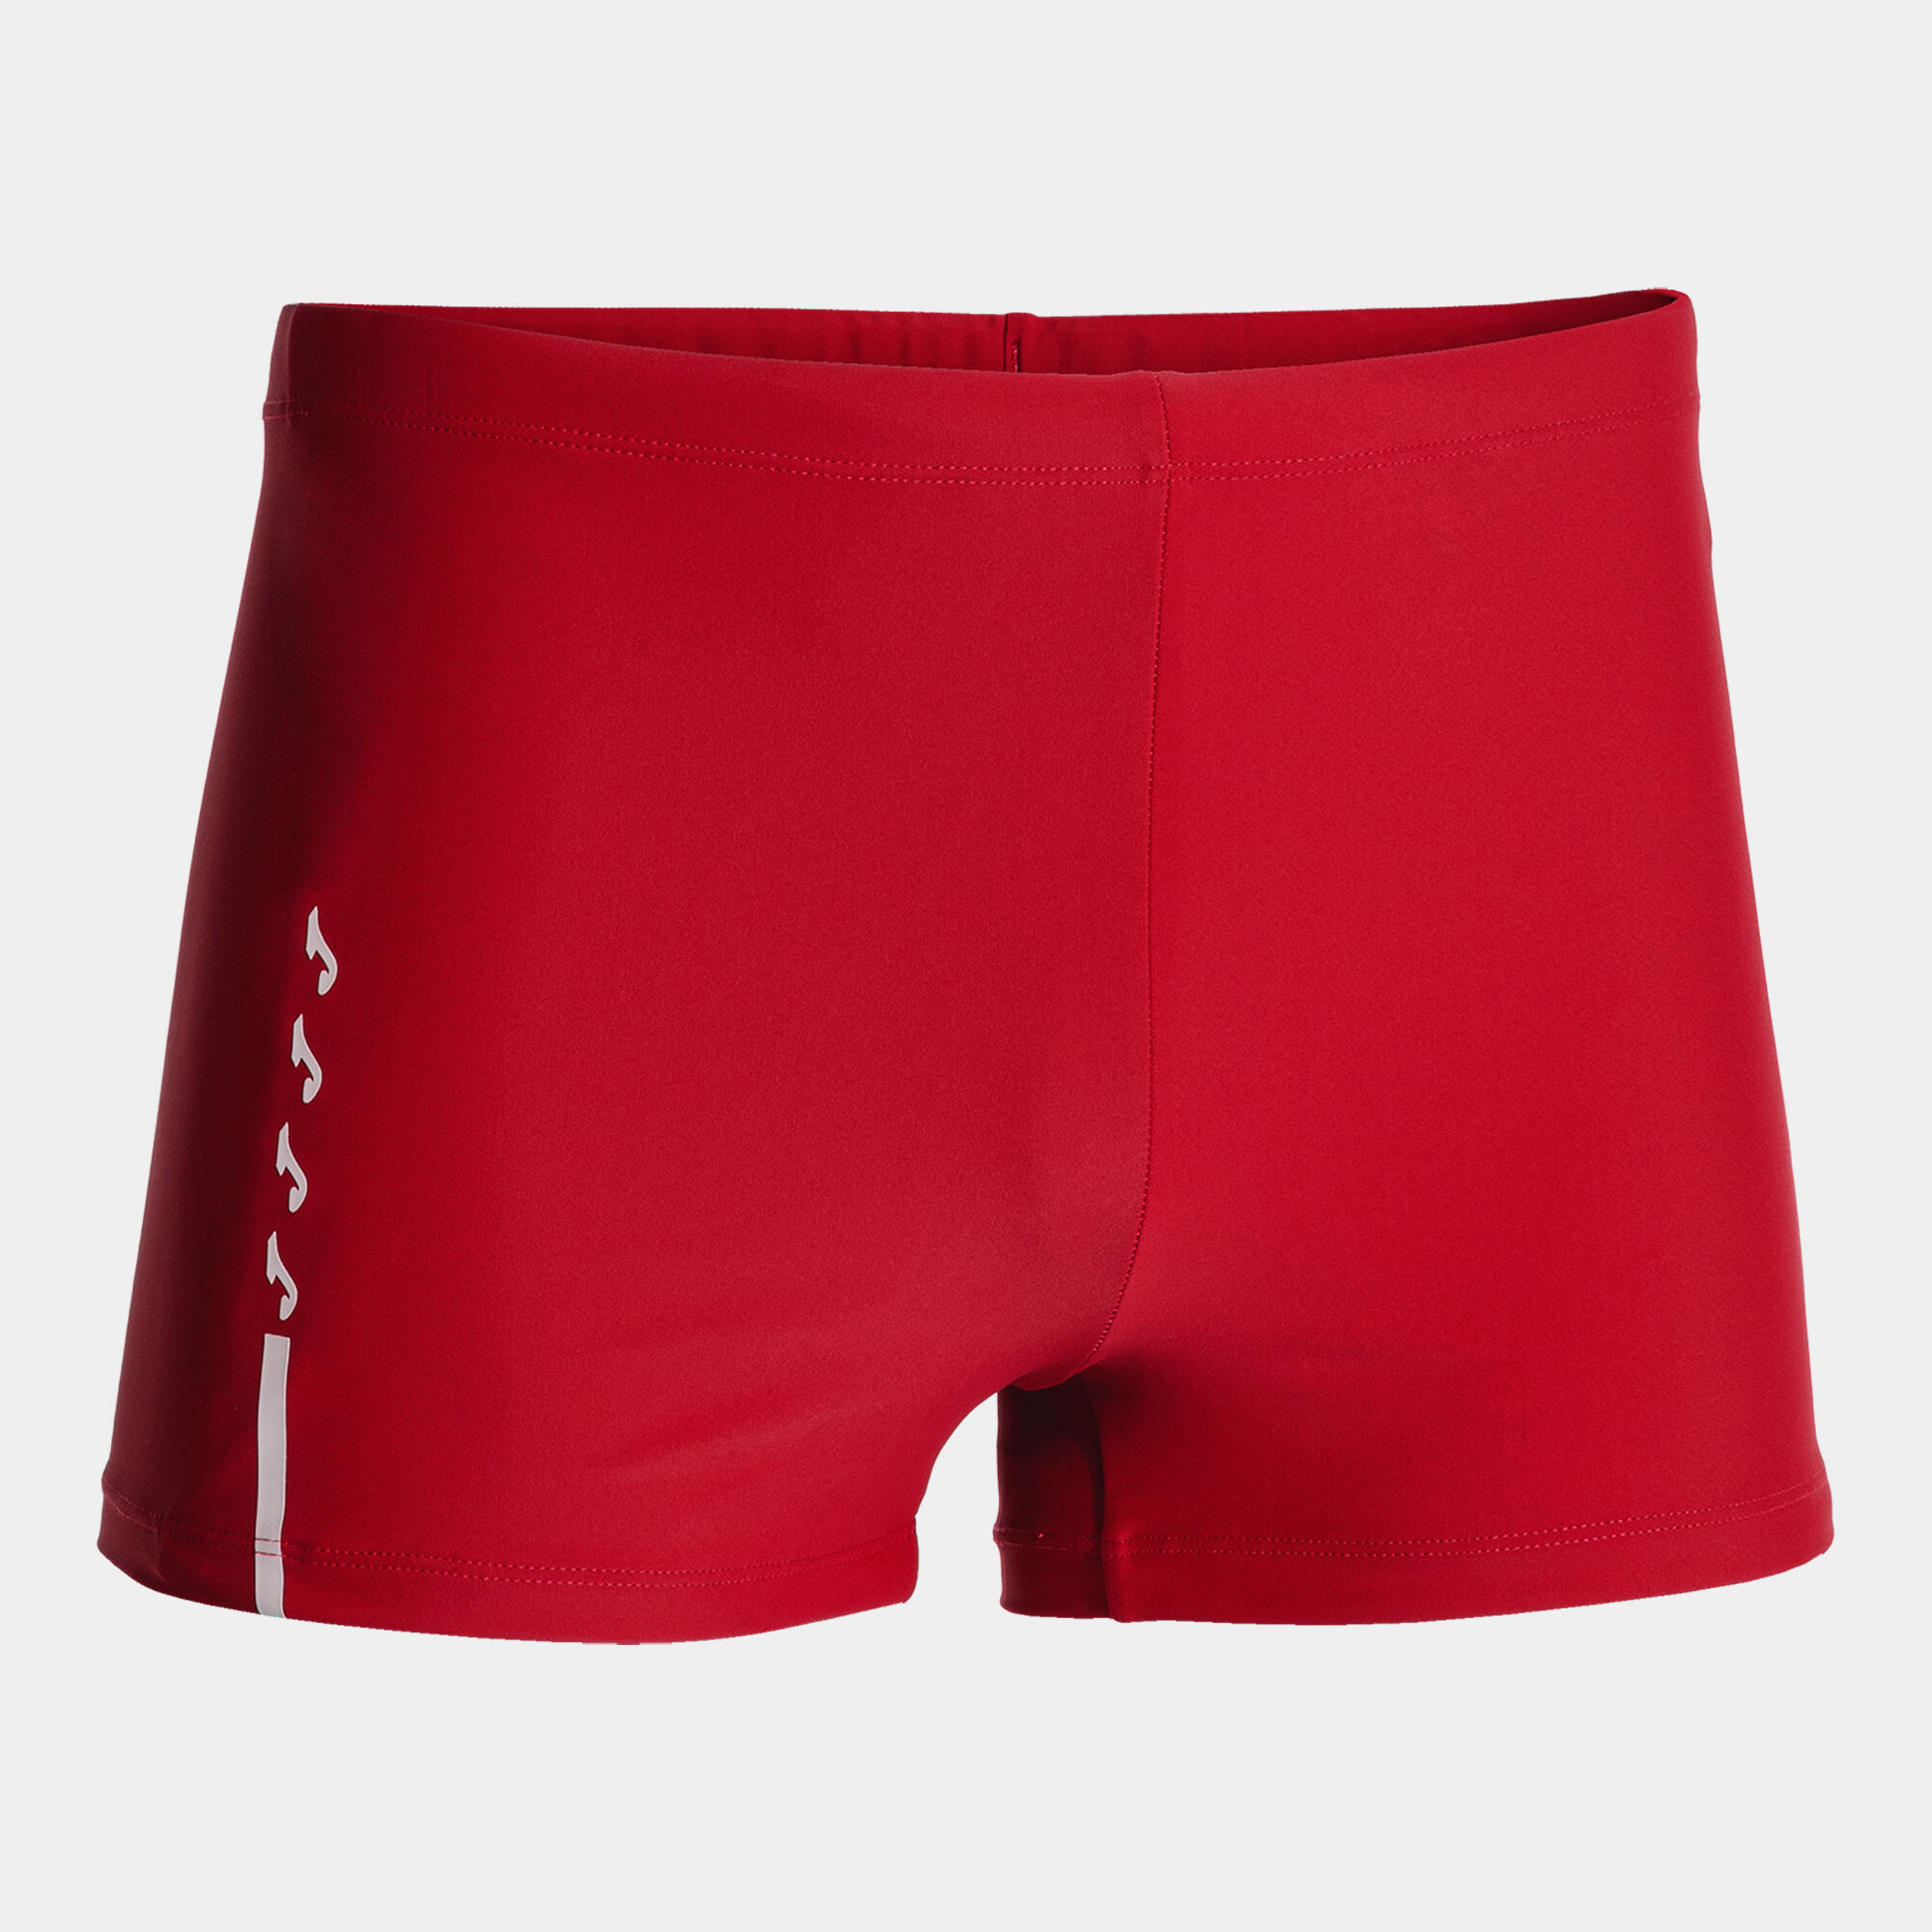 Boxeri pentru plajă bărbaȚi Shark III roșu